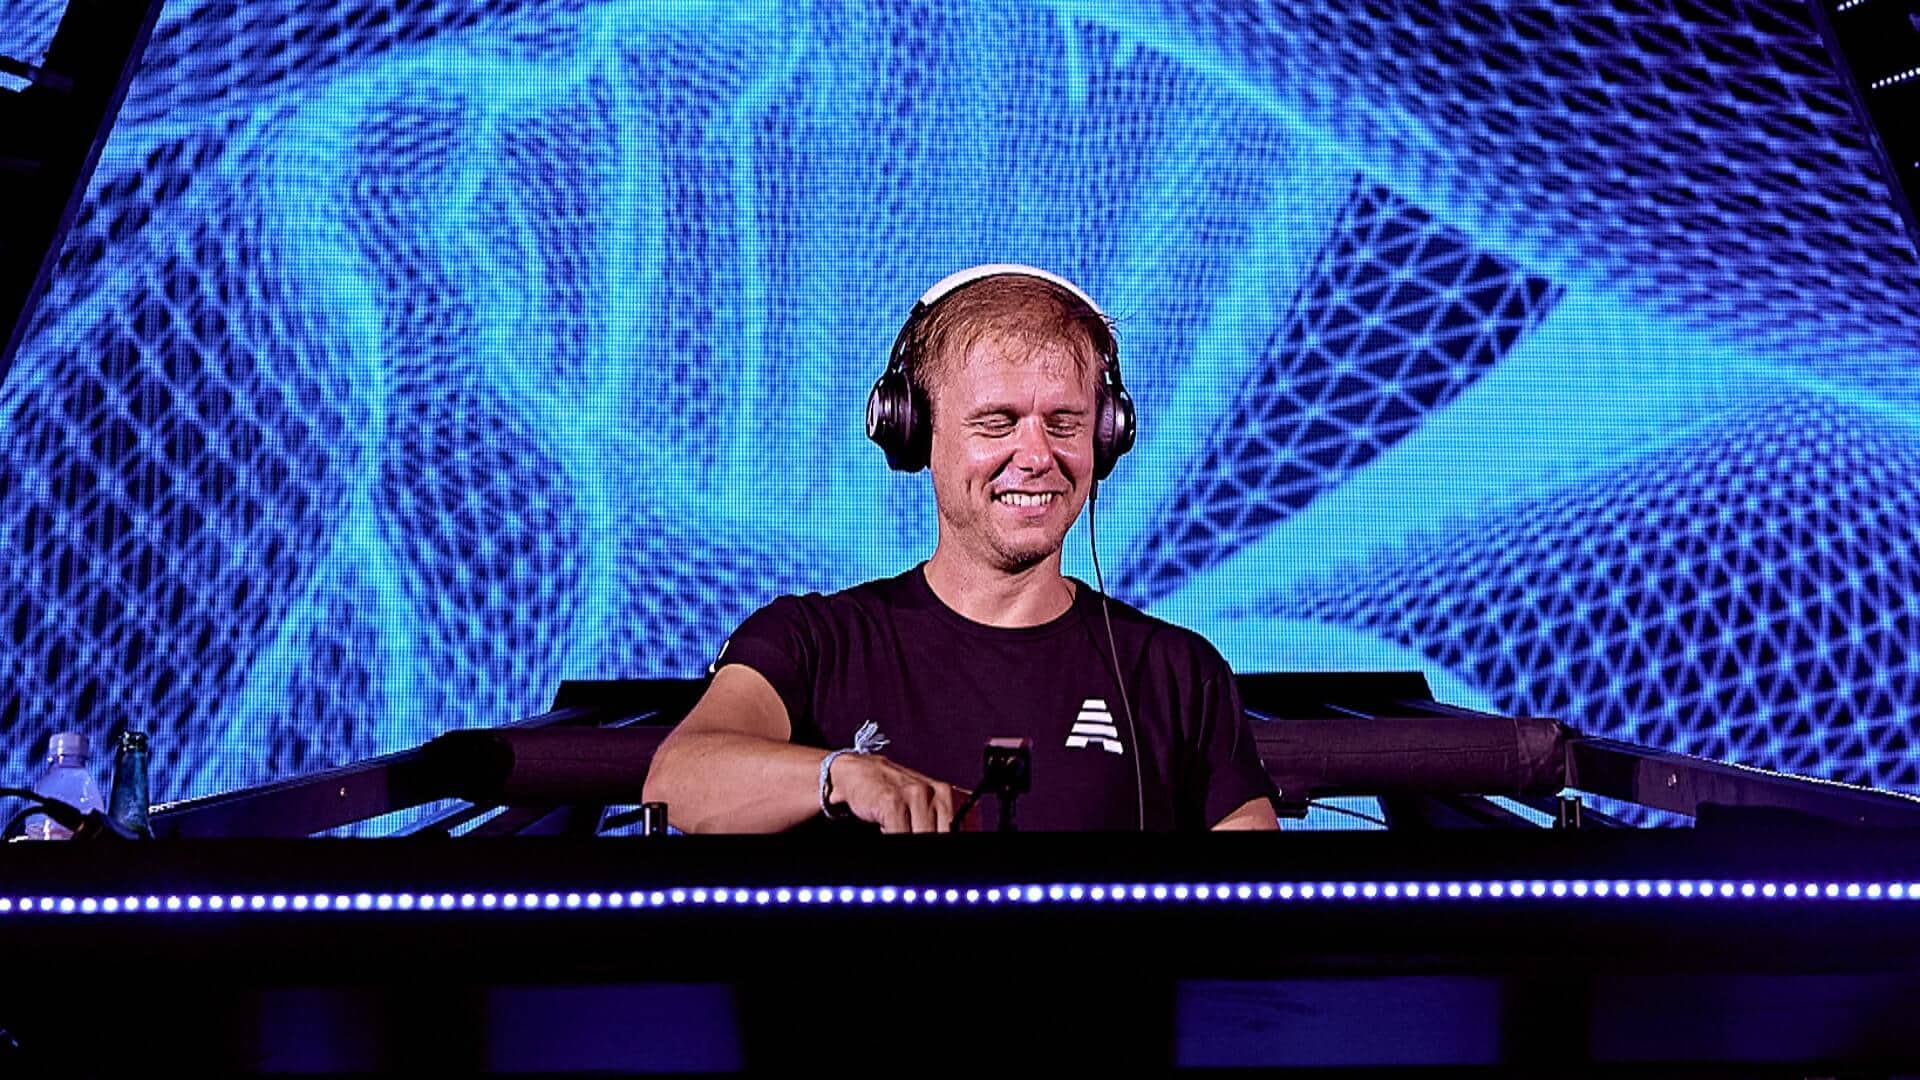 Armin van Buuren will headline South Stage at Creamfields 2021